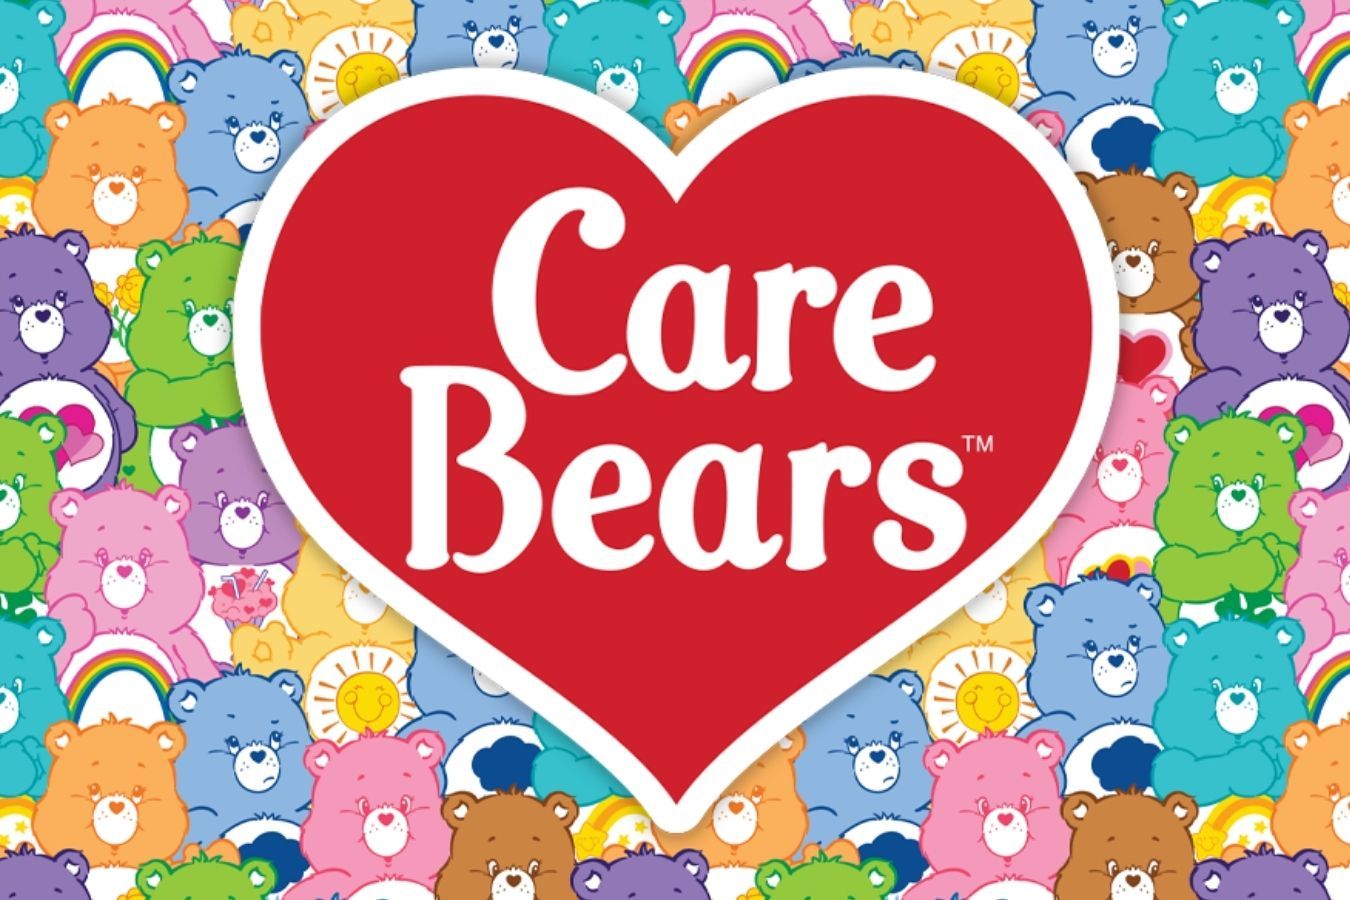 รวมชื่อ ความหมาย นิสัยของ 30 Care Bears ตุ๊กตาหมีแคร์แบร์แต่ละสีทั้งหมด